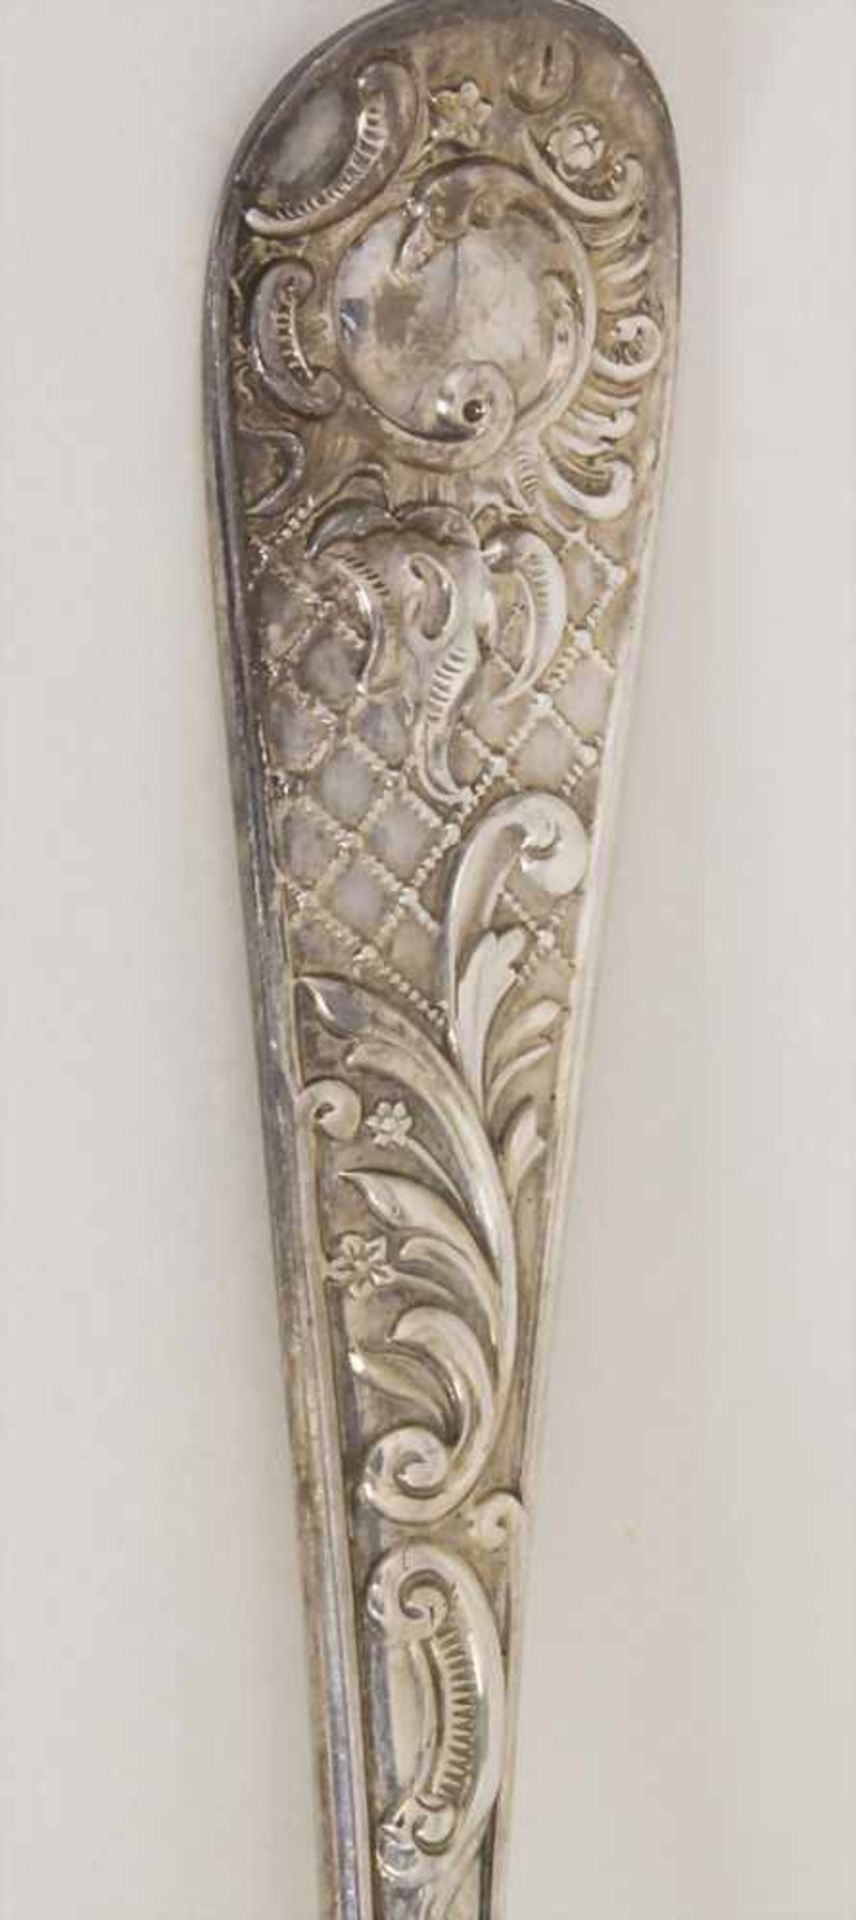 Prunkbesteck Paar Löffel / Two splendid silver spoons, Georg Jackson & David Fullerton, London, - Image 3 of 5